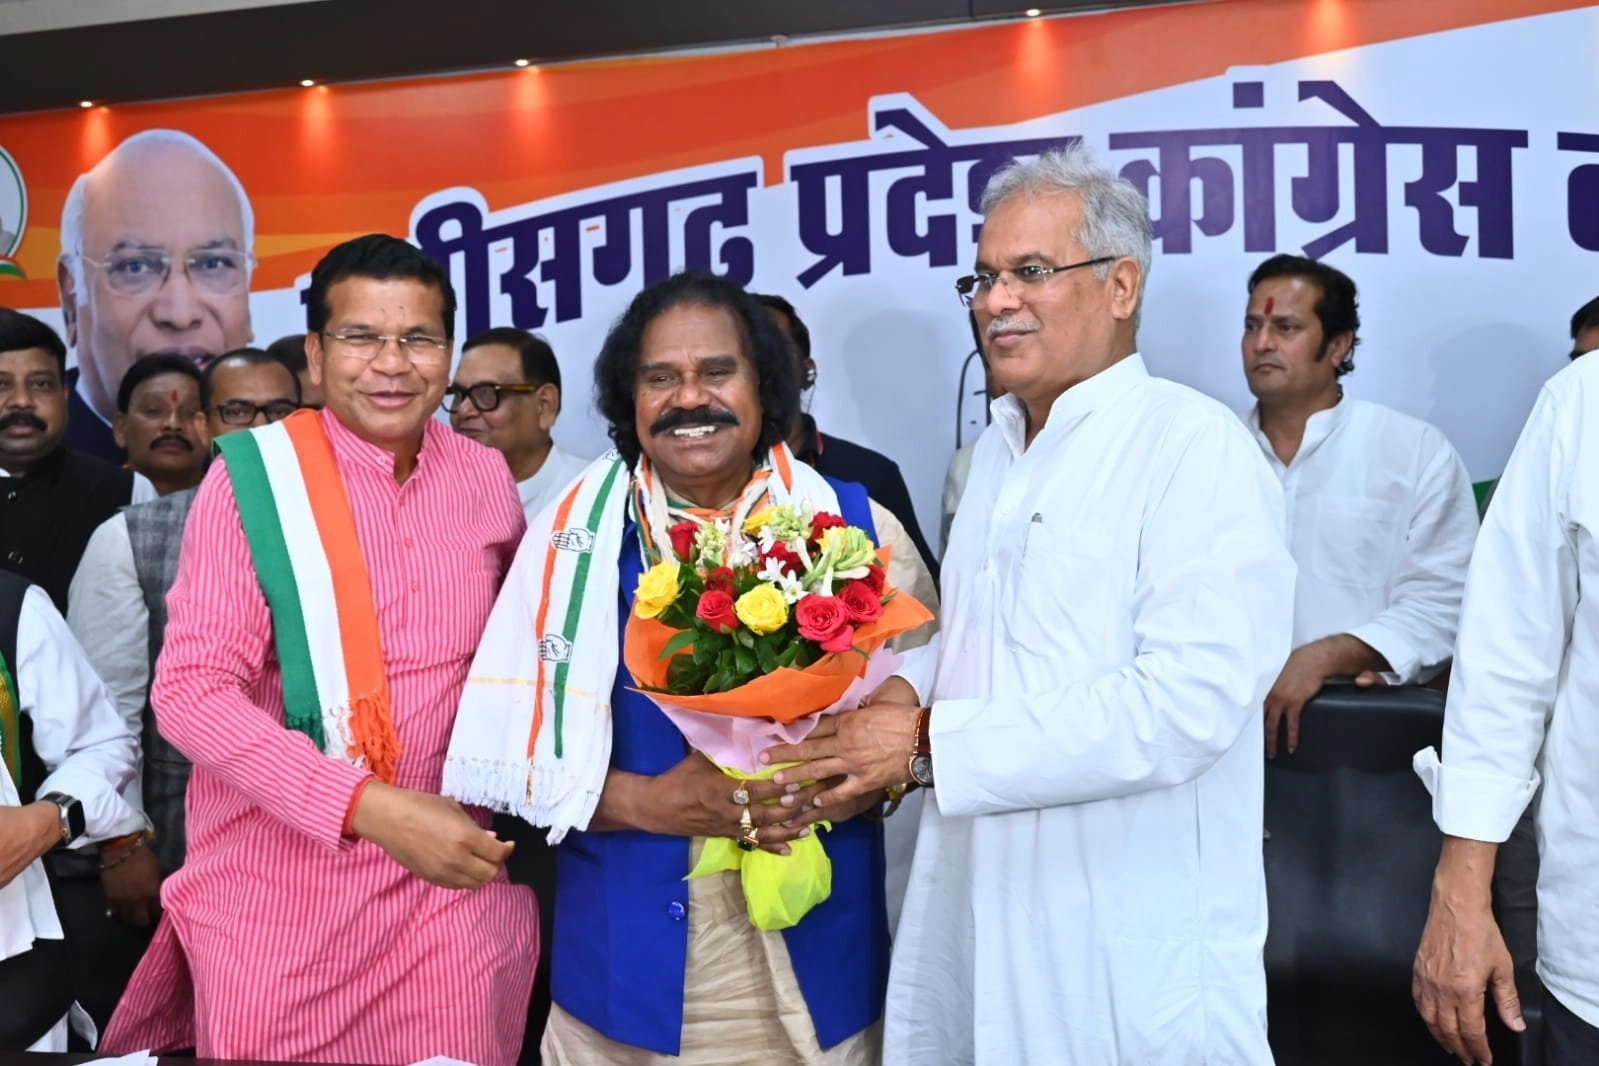 छत्तीसगढ़ में भाजपा को बड़ा झटका, दिग्गज आदिवासी नेता नंदकुमार साय कांग्रेस में शामिल - Senior BJP leader Nandkumar Sai joins Congress in Chhattisgarh